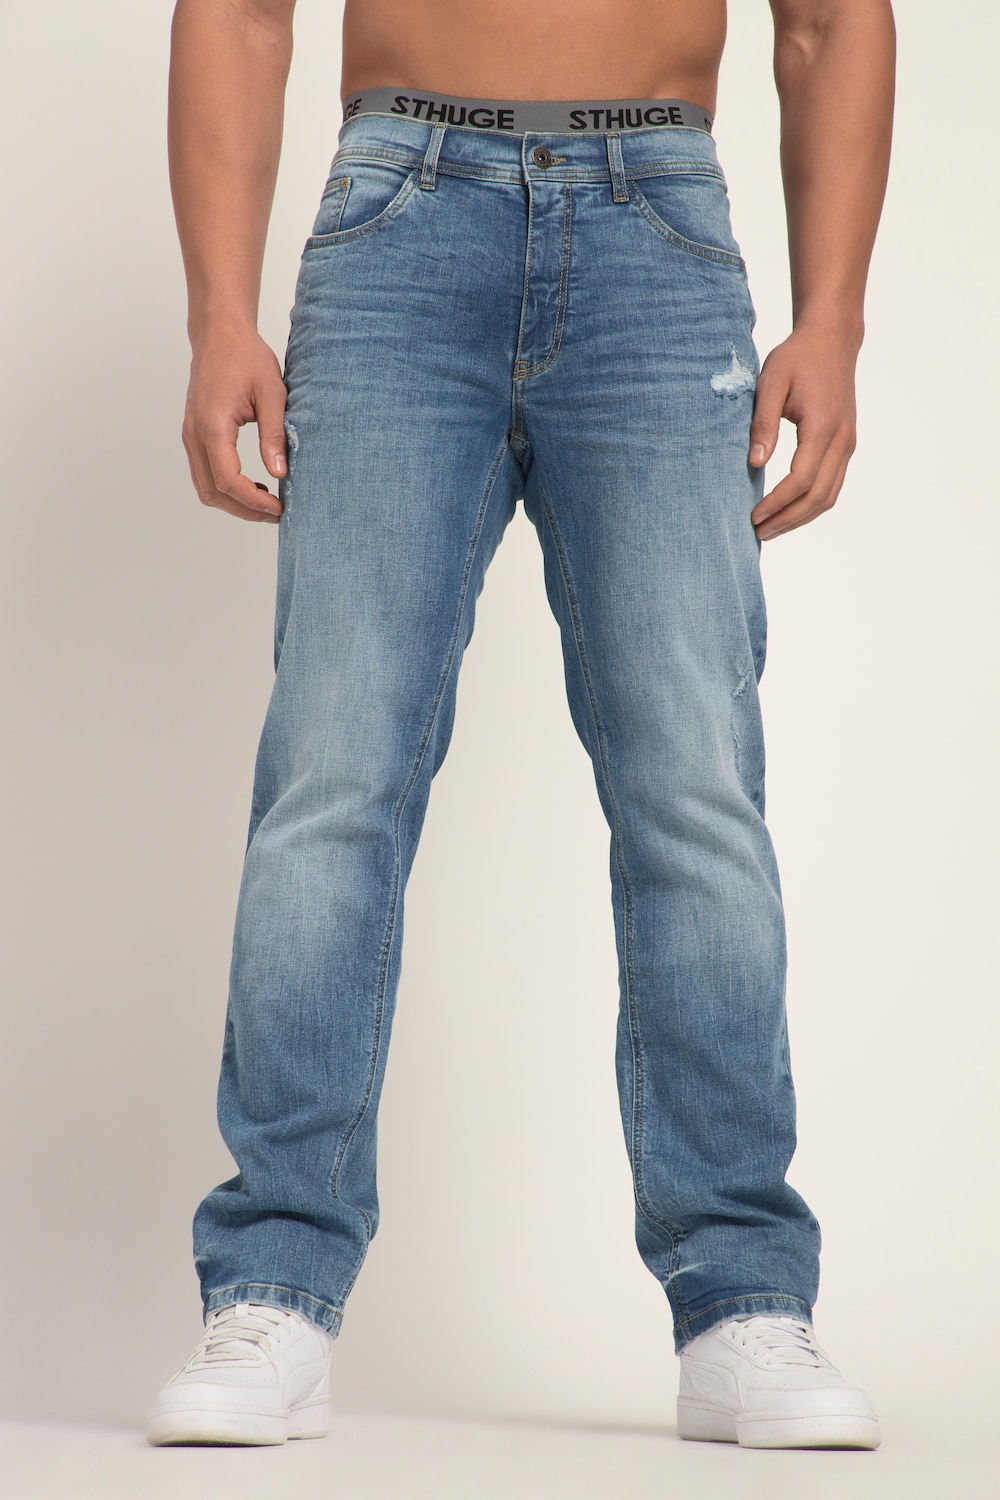 Grote Maten STHUGE Jeans FLEXLASTIC®male, blauw, Maat: 52, Katoen, STHUGE